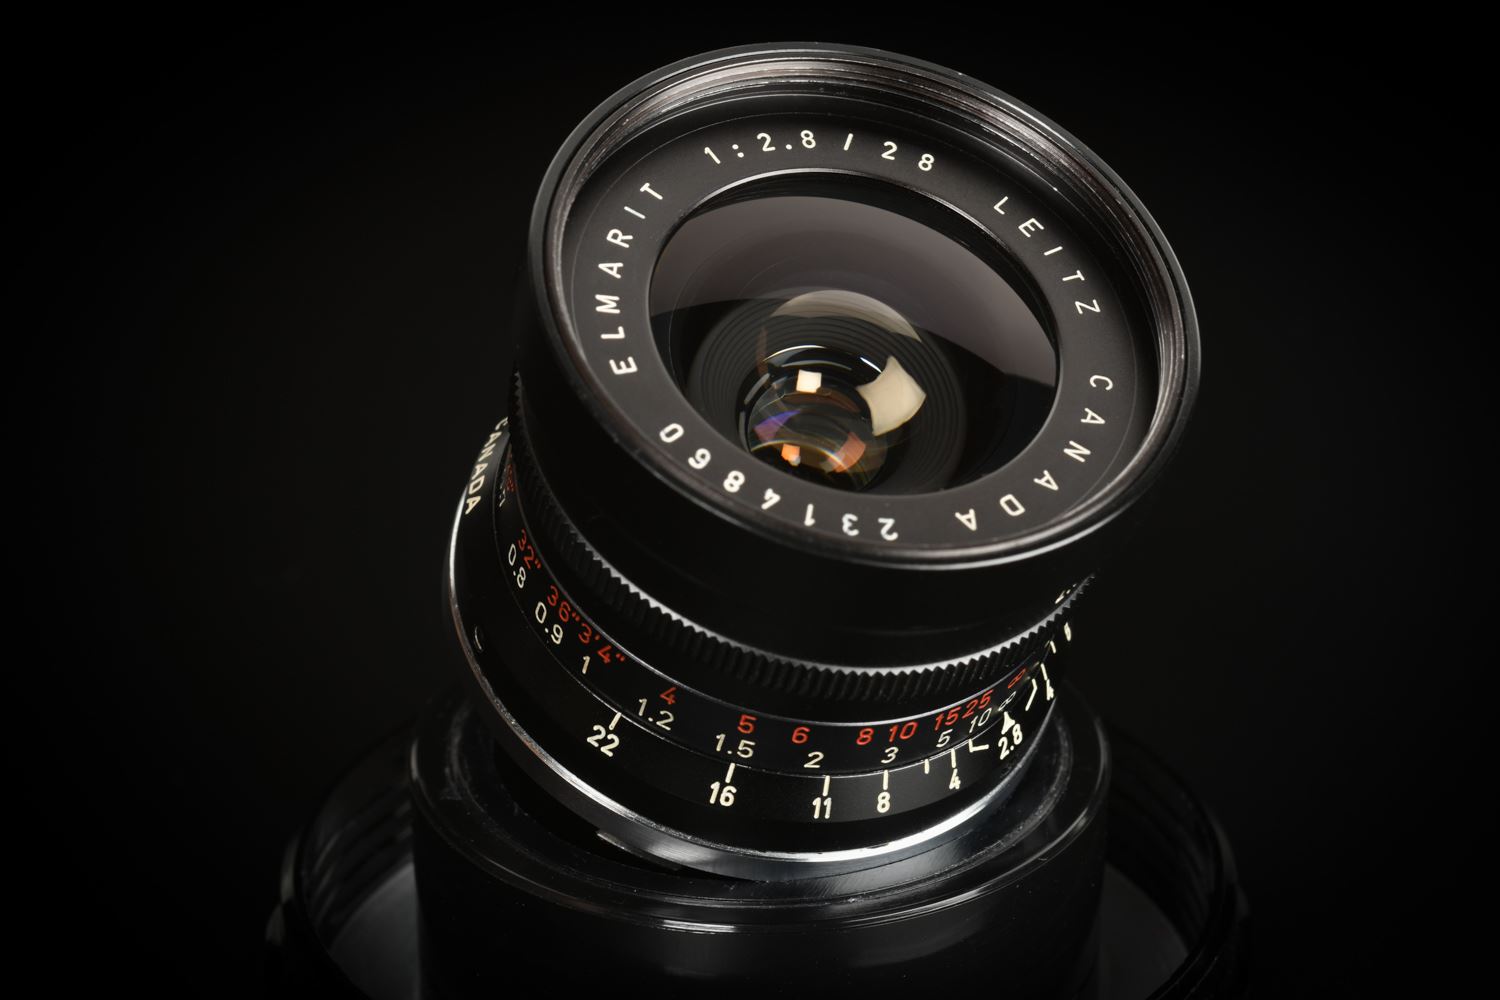 f22cameras | Leica Elmarit-M 28mm f/2.8 Ver.1 Canada 9-element 